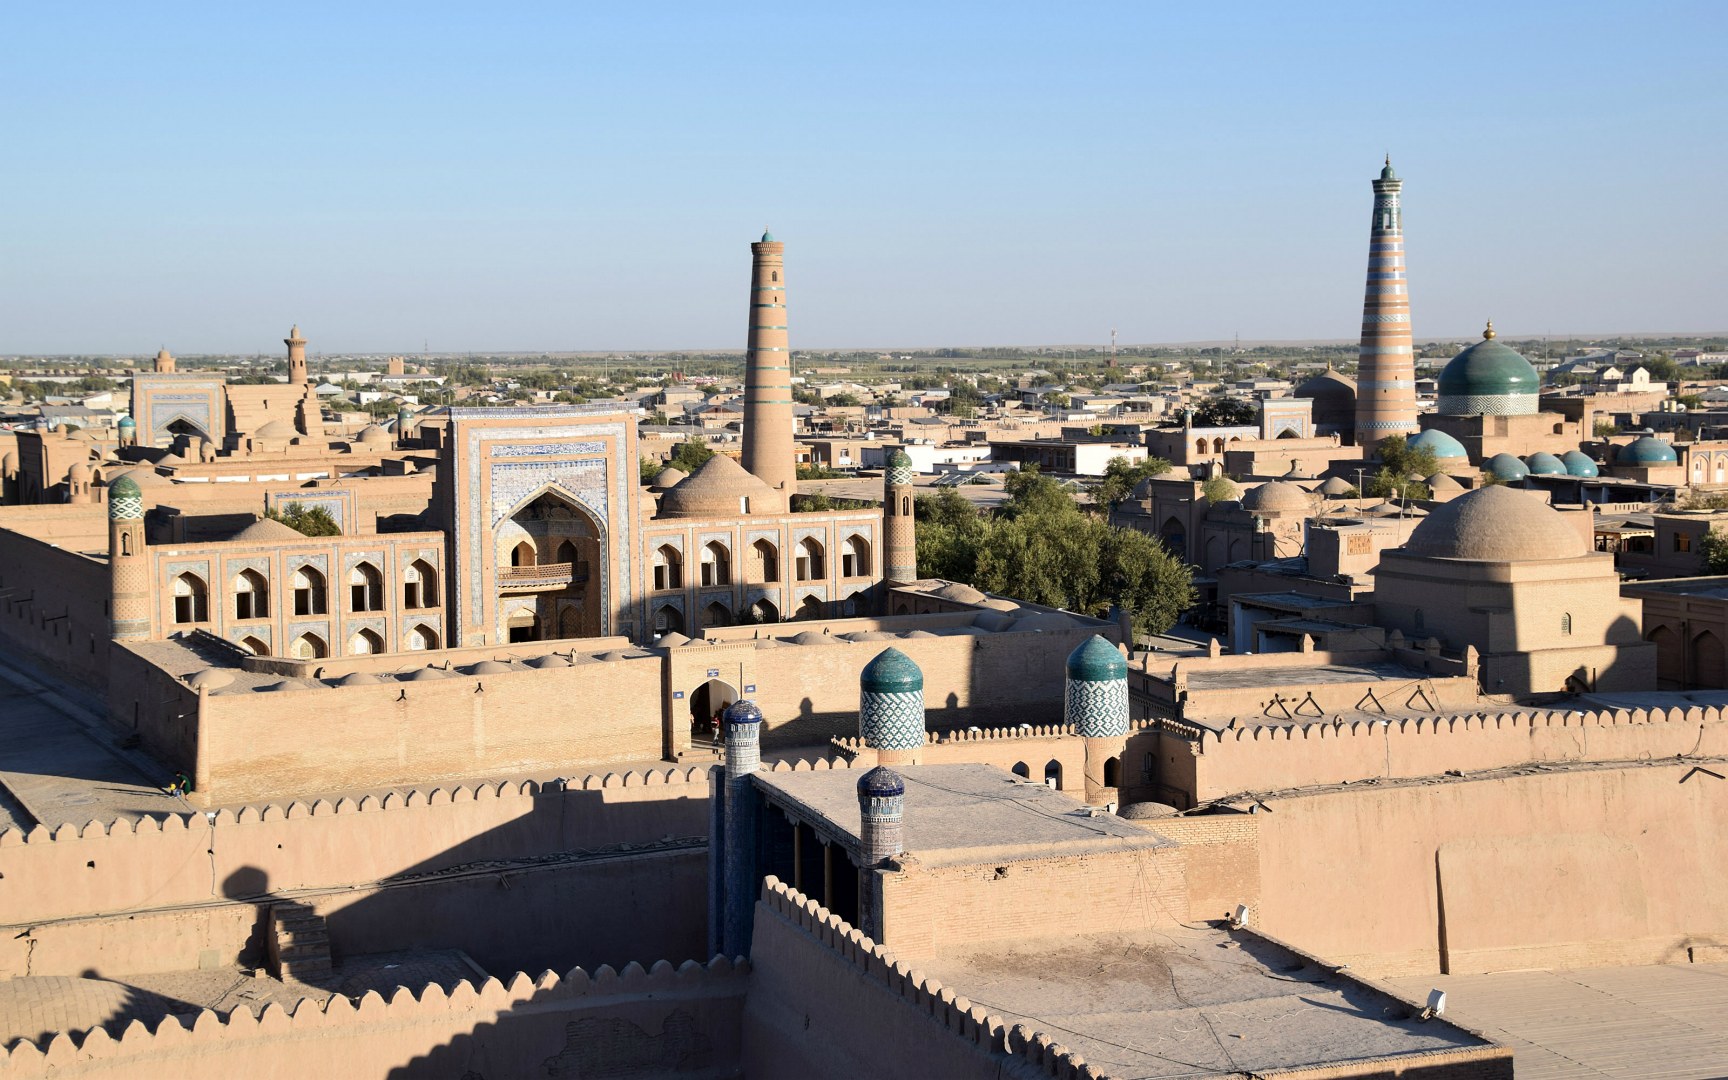 View from Kunya Ark, Khiva